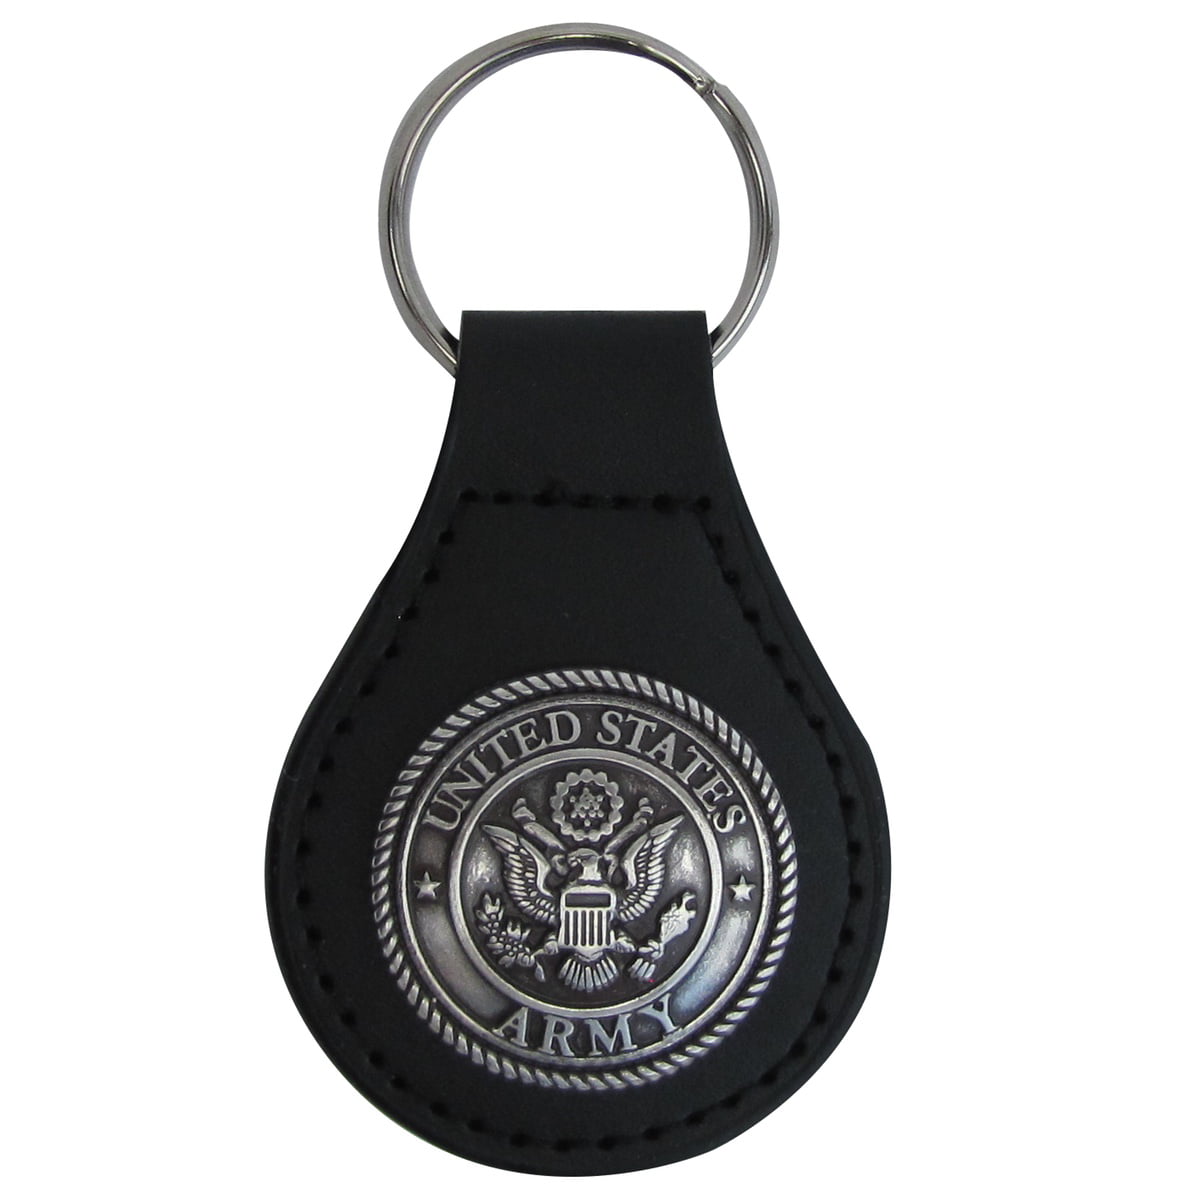 Leather Metal Car Keychain Keyring Purse Bag Key Chain Ring Keyfob Accessories 